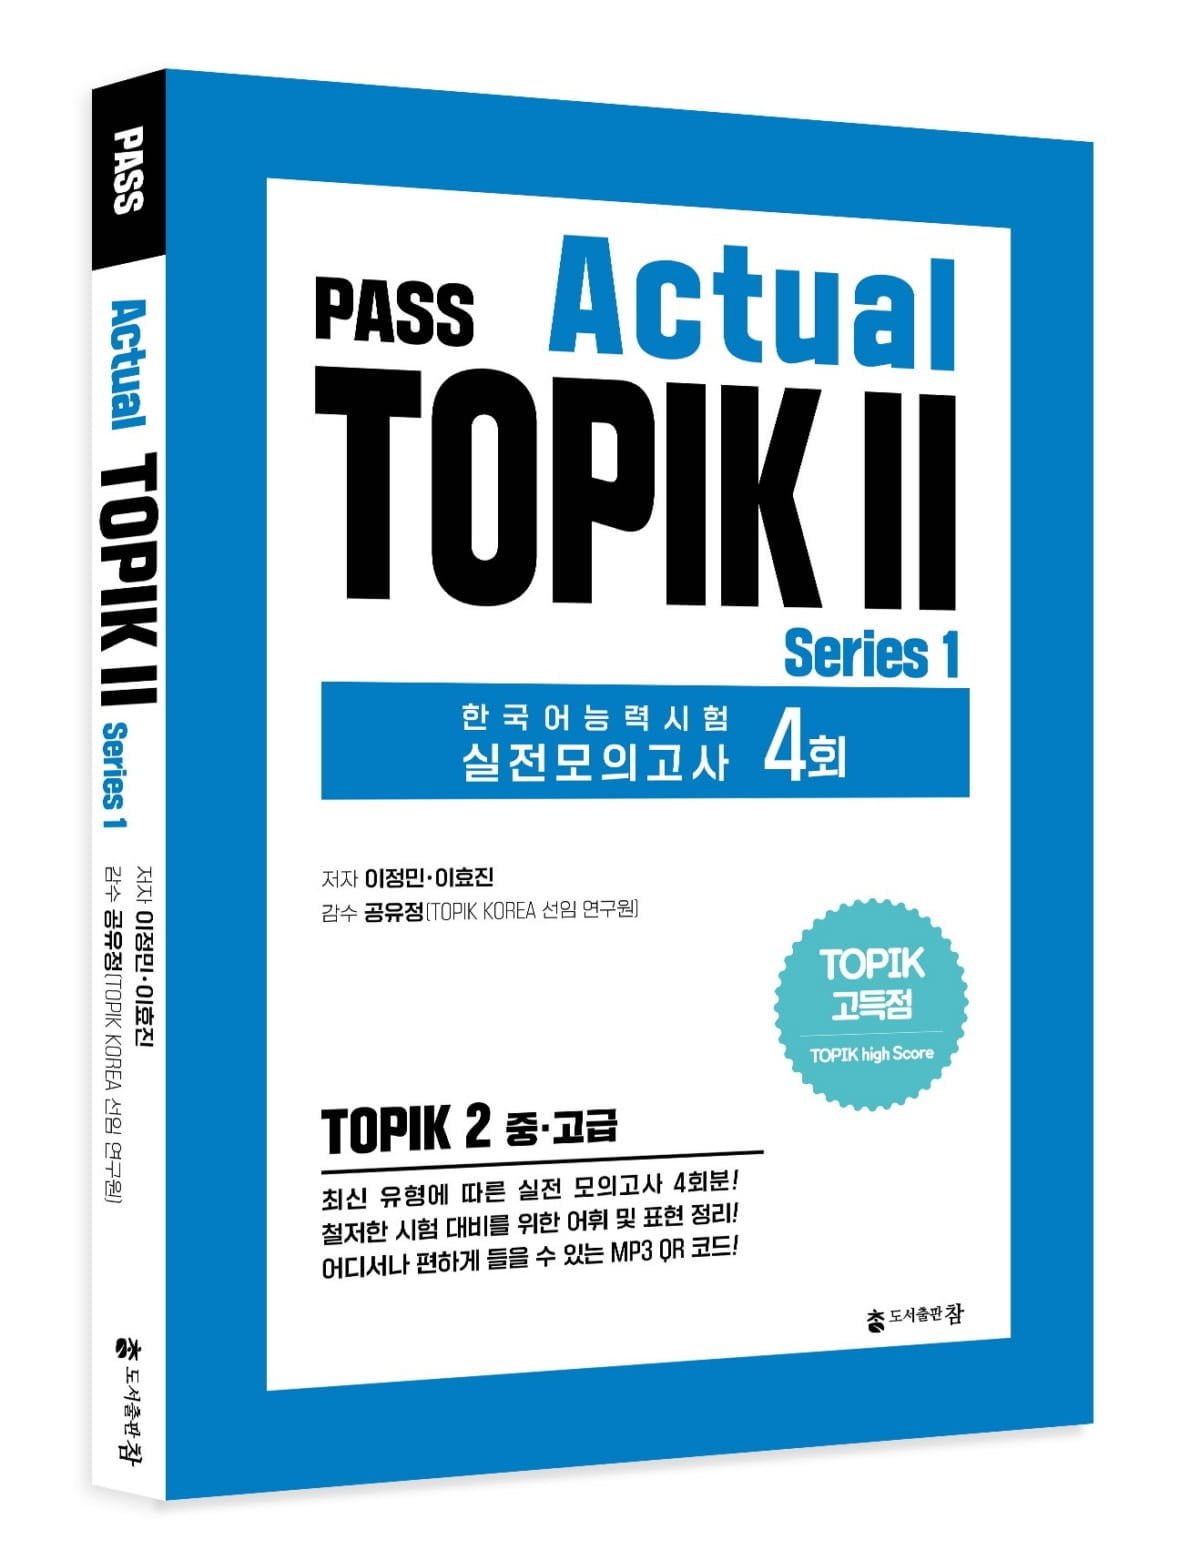 도서출판 참, ‘PASS Actual TOPIK’ 한국어능력시험 고득점 대비 모의고사 4회분 수록